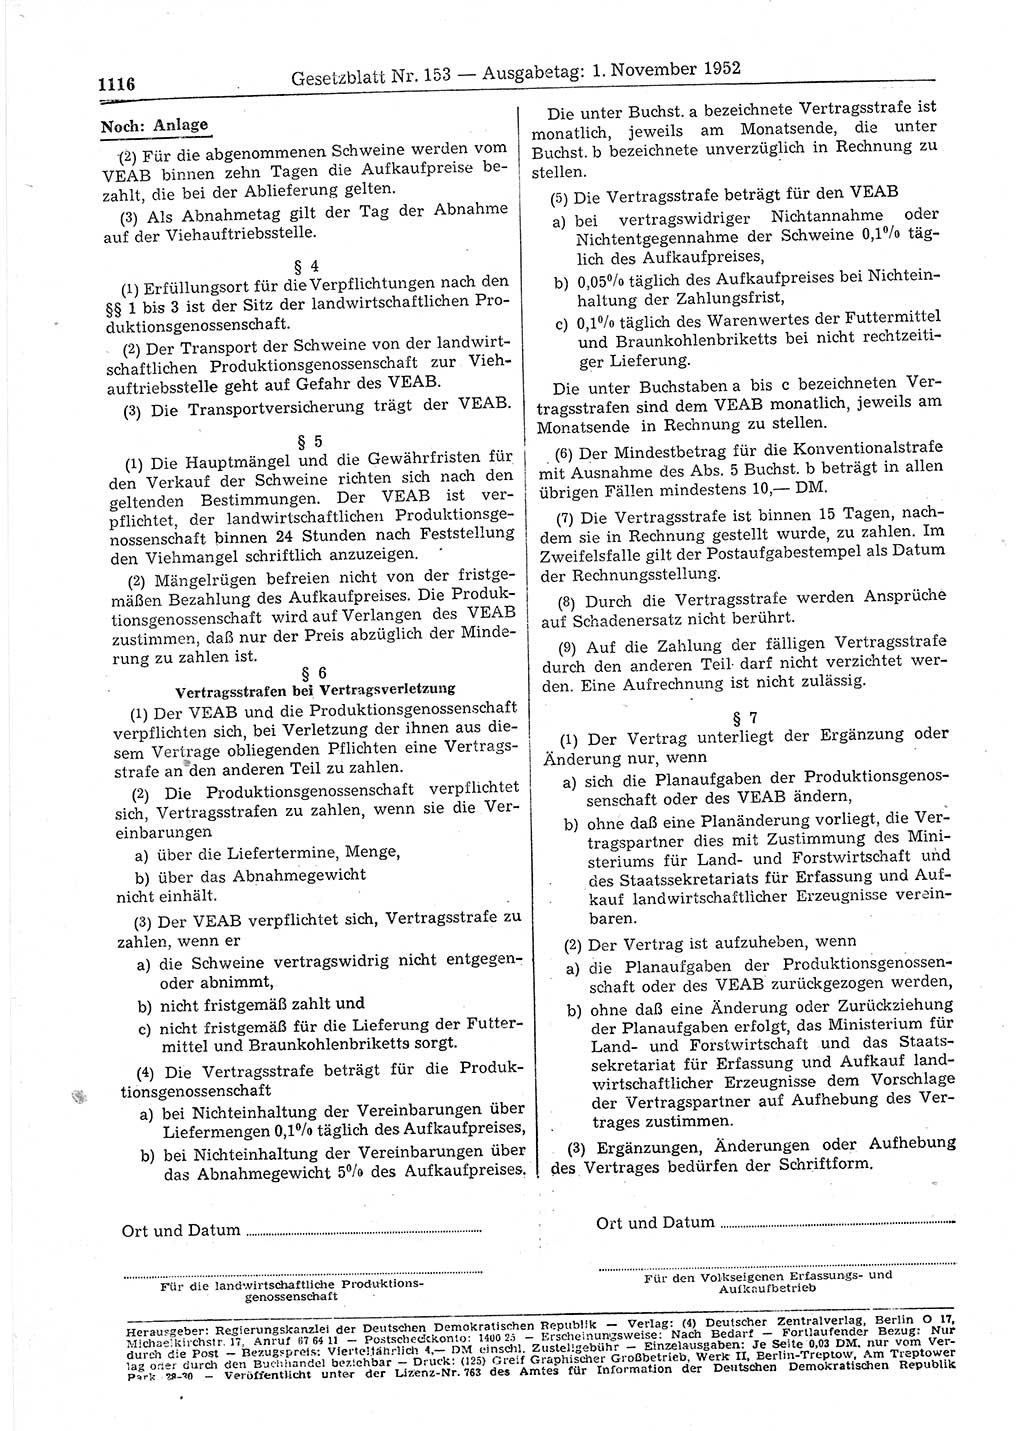 Gesetzblatt (GBl.) der Deutschen Demokratischen Republik (DDR) 1952, Seite 1116 (GBl. DDR 1952, S. 1116)